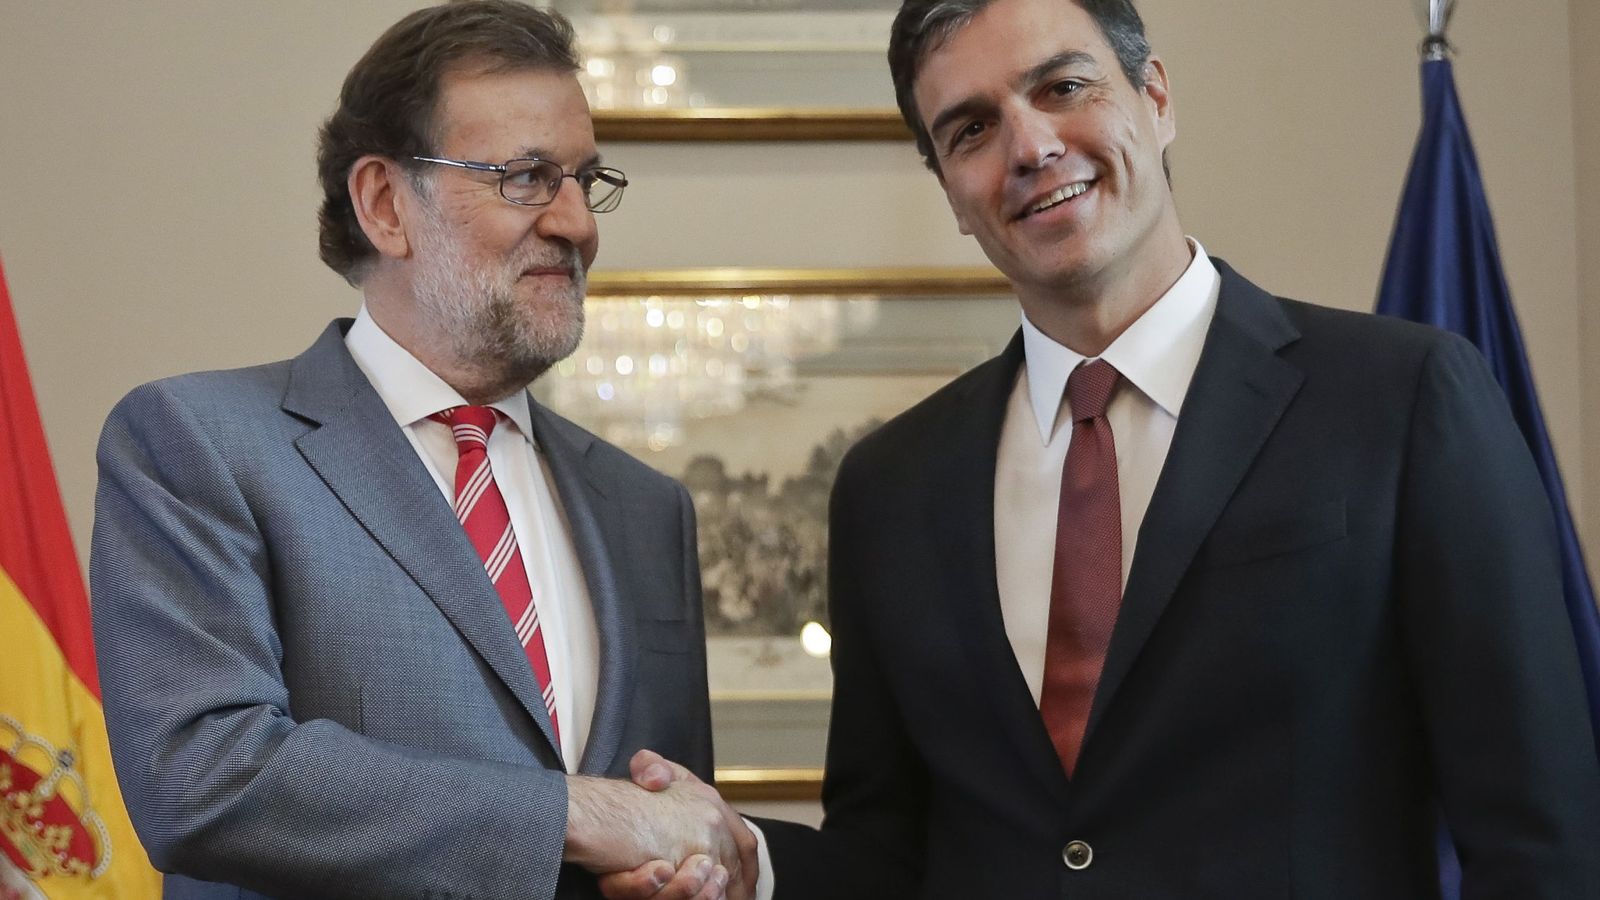 Foto: El presidente del Gobierno en funciones, Mariano Rajoy, y el secretario general del PSOE, Pedro Sánchez, durante la reunión que mantuvieron el día 13 en el Congreso. (EFE)